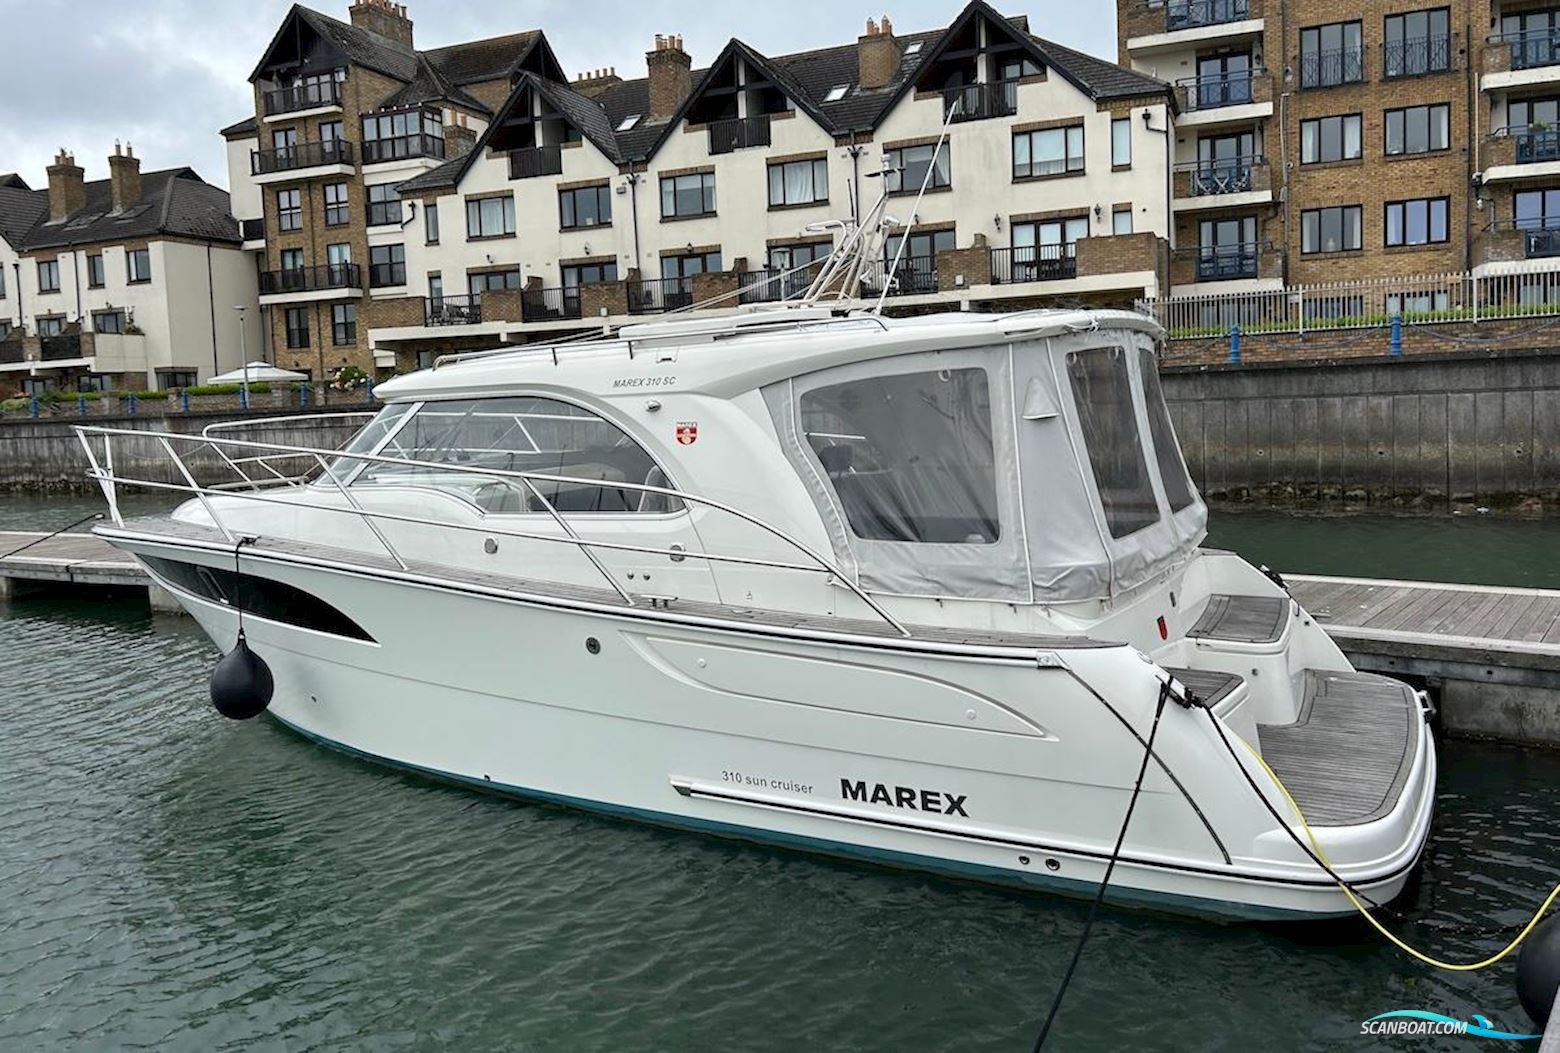 Marex 310 Sun Cruiser Motorbåt 2019, med Volvo Penta motor, Ireland